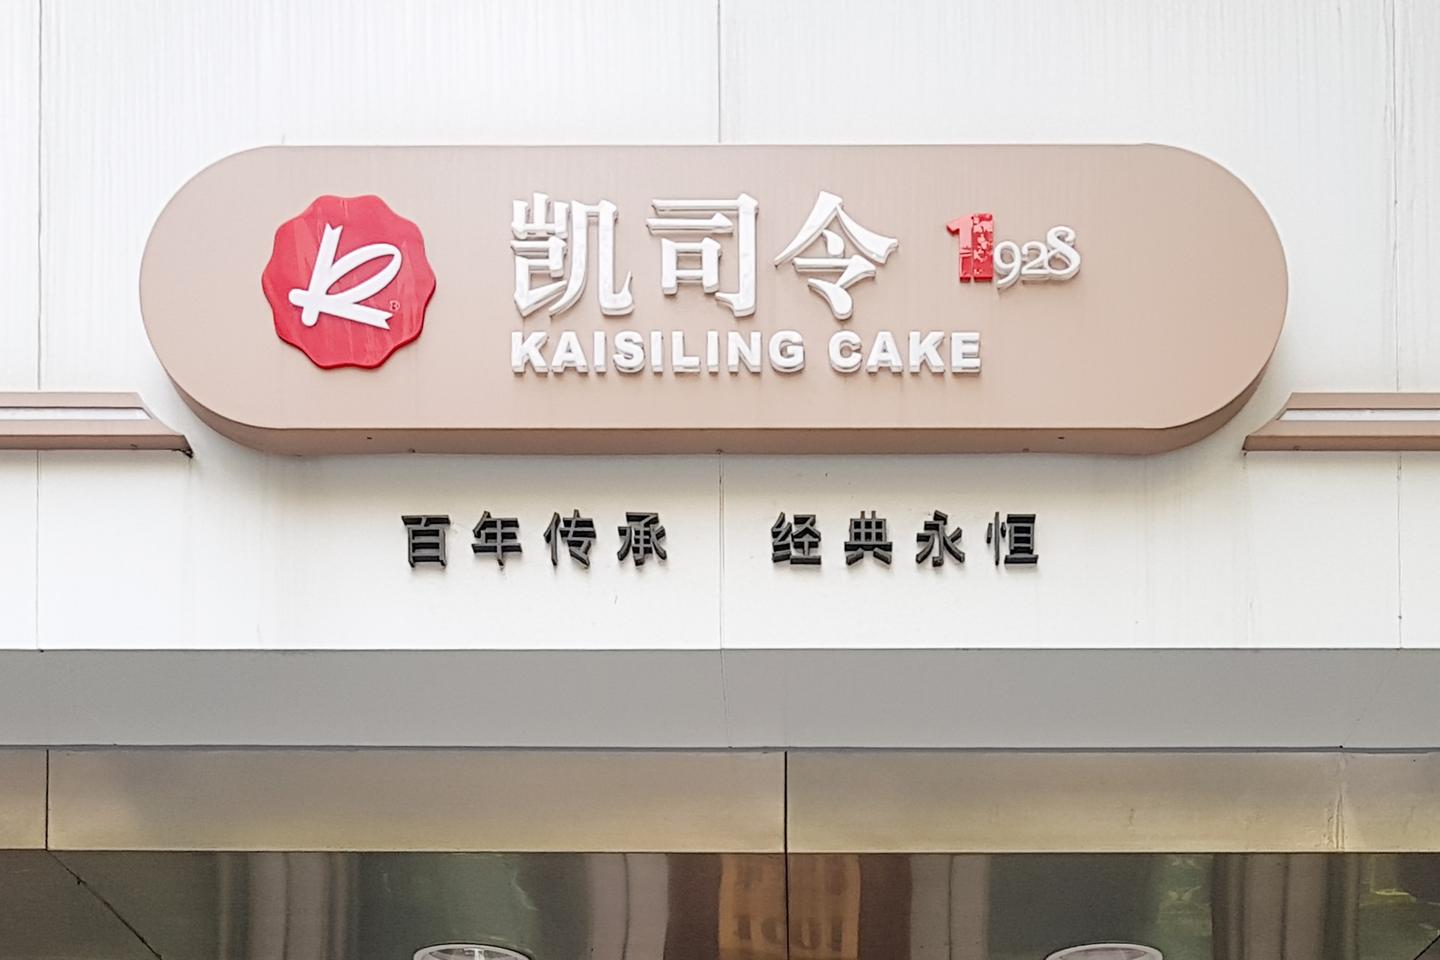 「凯司令珈琲館 New Kaisiling Cafe」中国人による初のケーキブランドは中国版”不二家” 伝説のCAFEを探す EP666 ...